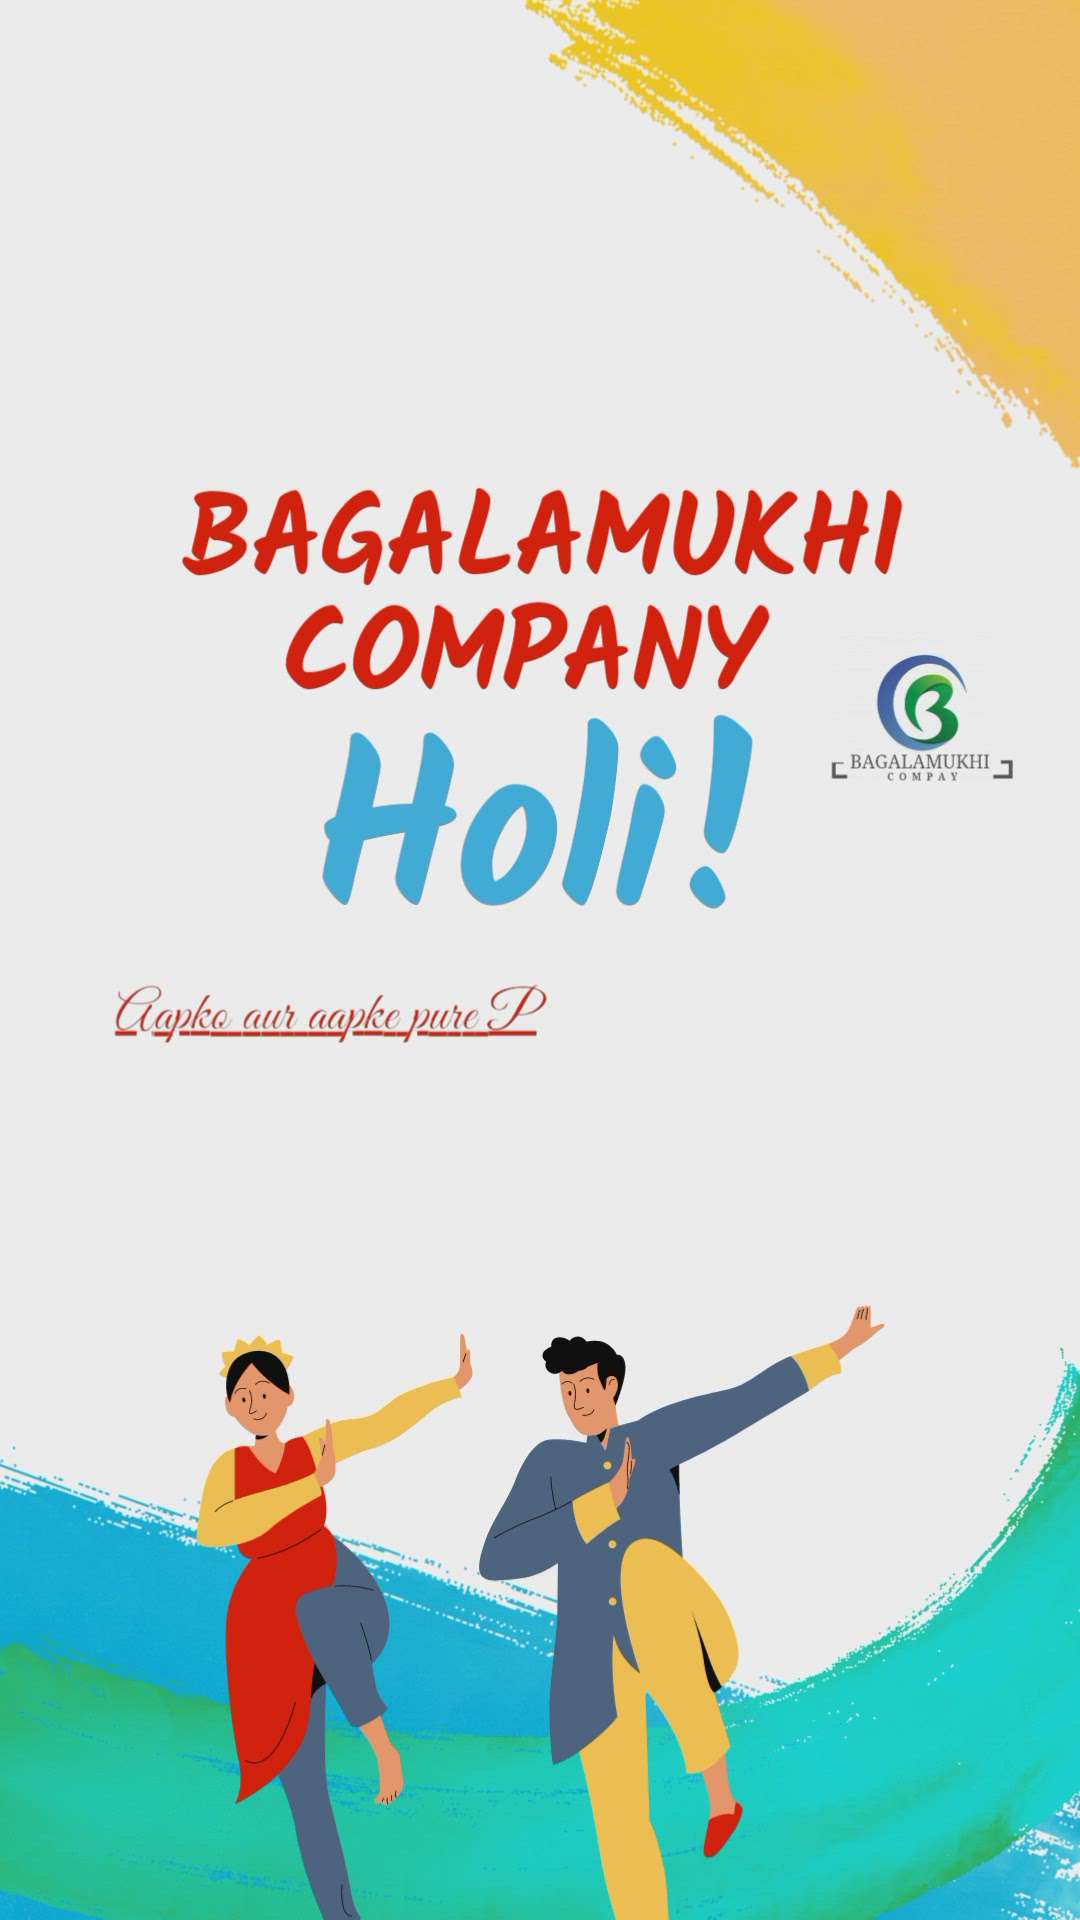 bagalamukhi company indore mp
bagalamukhi company ki or se aap sabhi ko Holi ki hardik shubhkamnaen